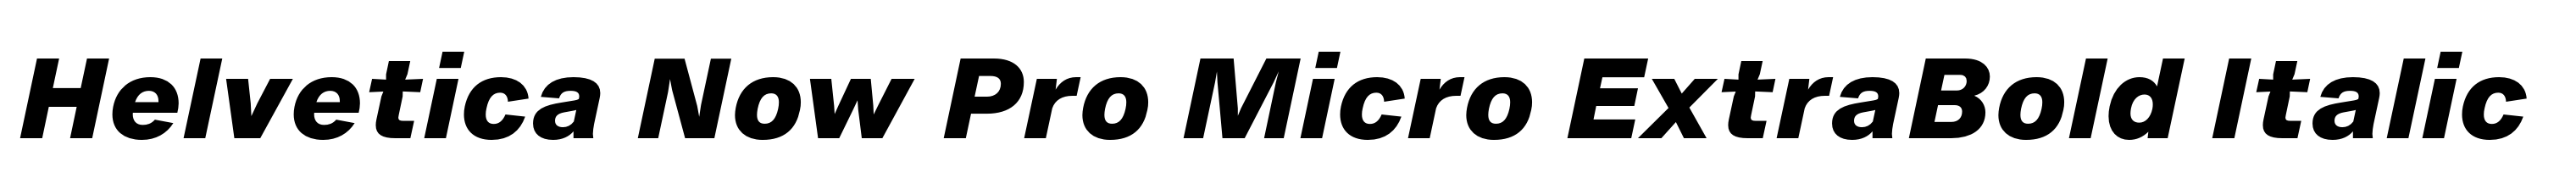 Helvetica Now Pro Micro ExtraBold Italic